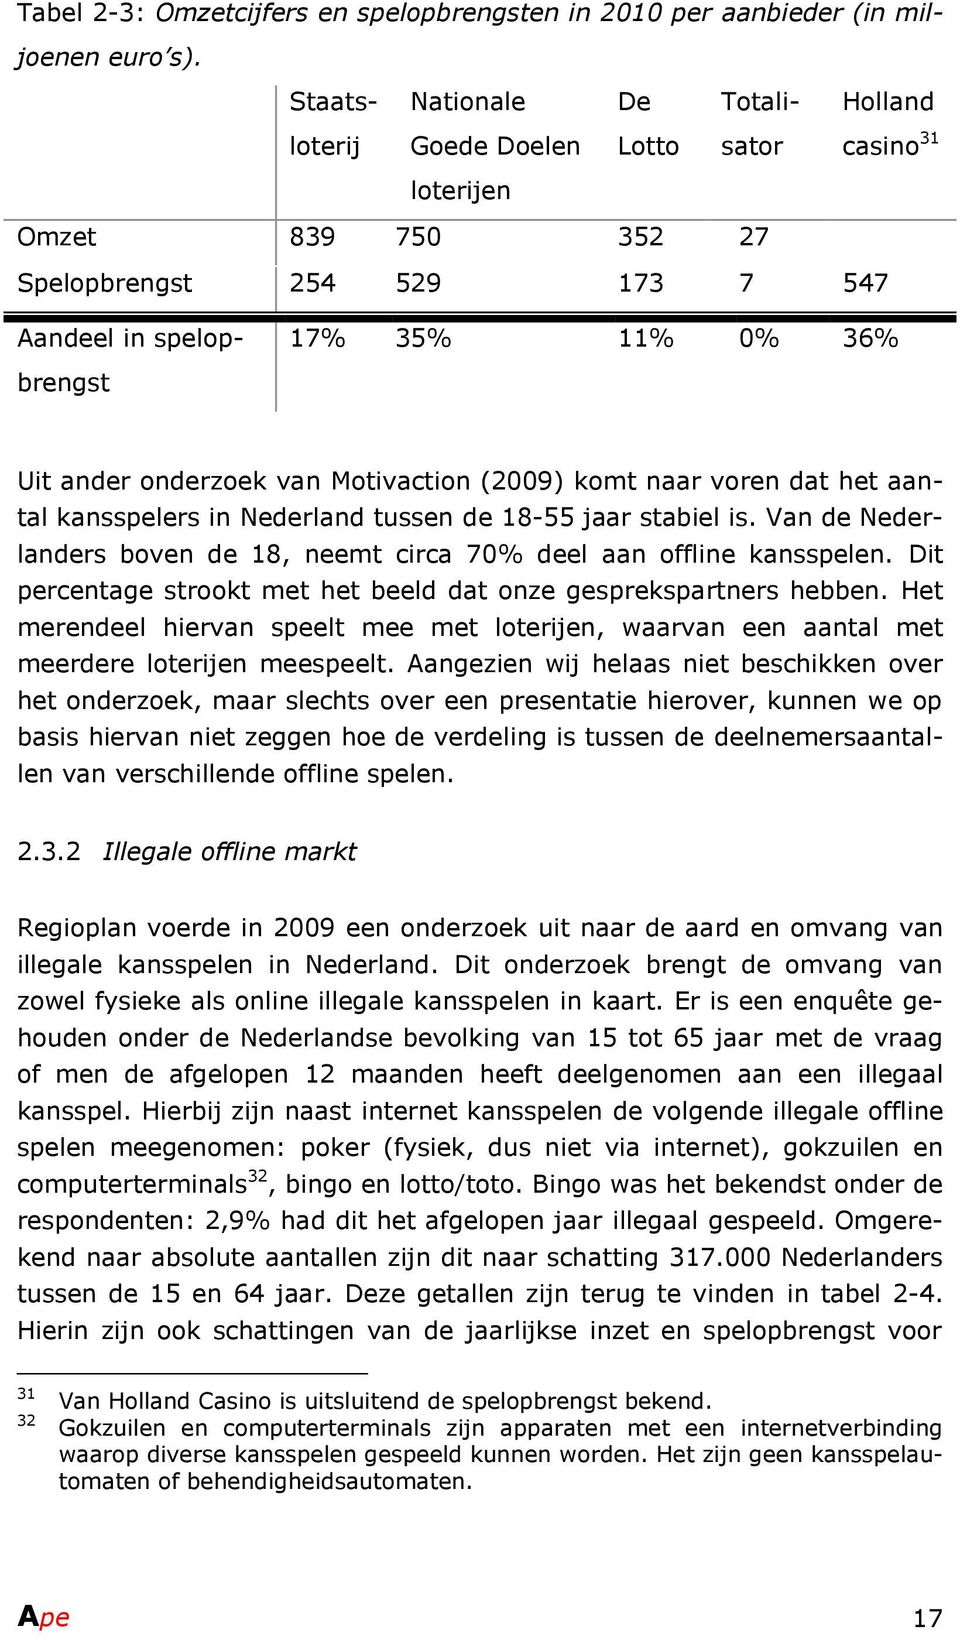 onderzoek van Motivaction (2009) komt naar voren dat het aantal kansspelers in Nederland tussen de 18-55 jaar stabiel is. Van de Nederlanders boven de 18, neemt circa 70% deel aan offline kansspelen.